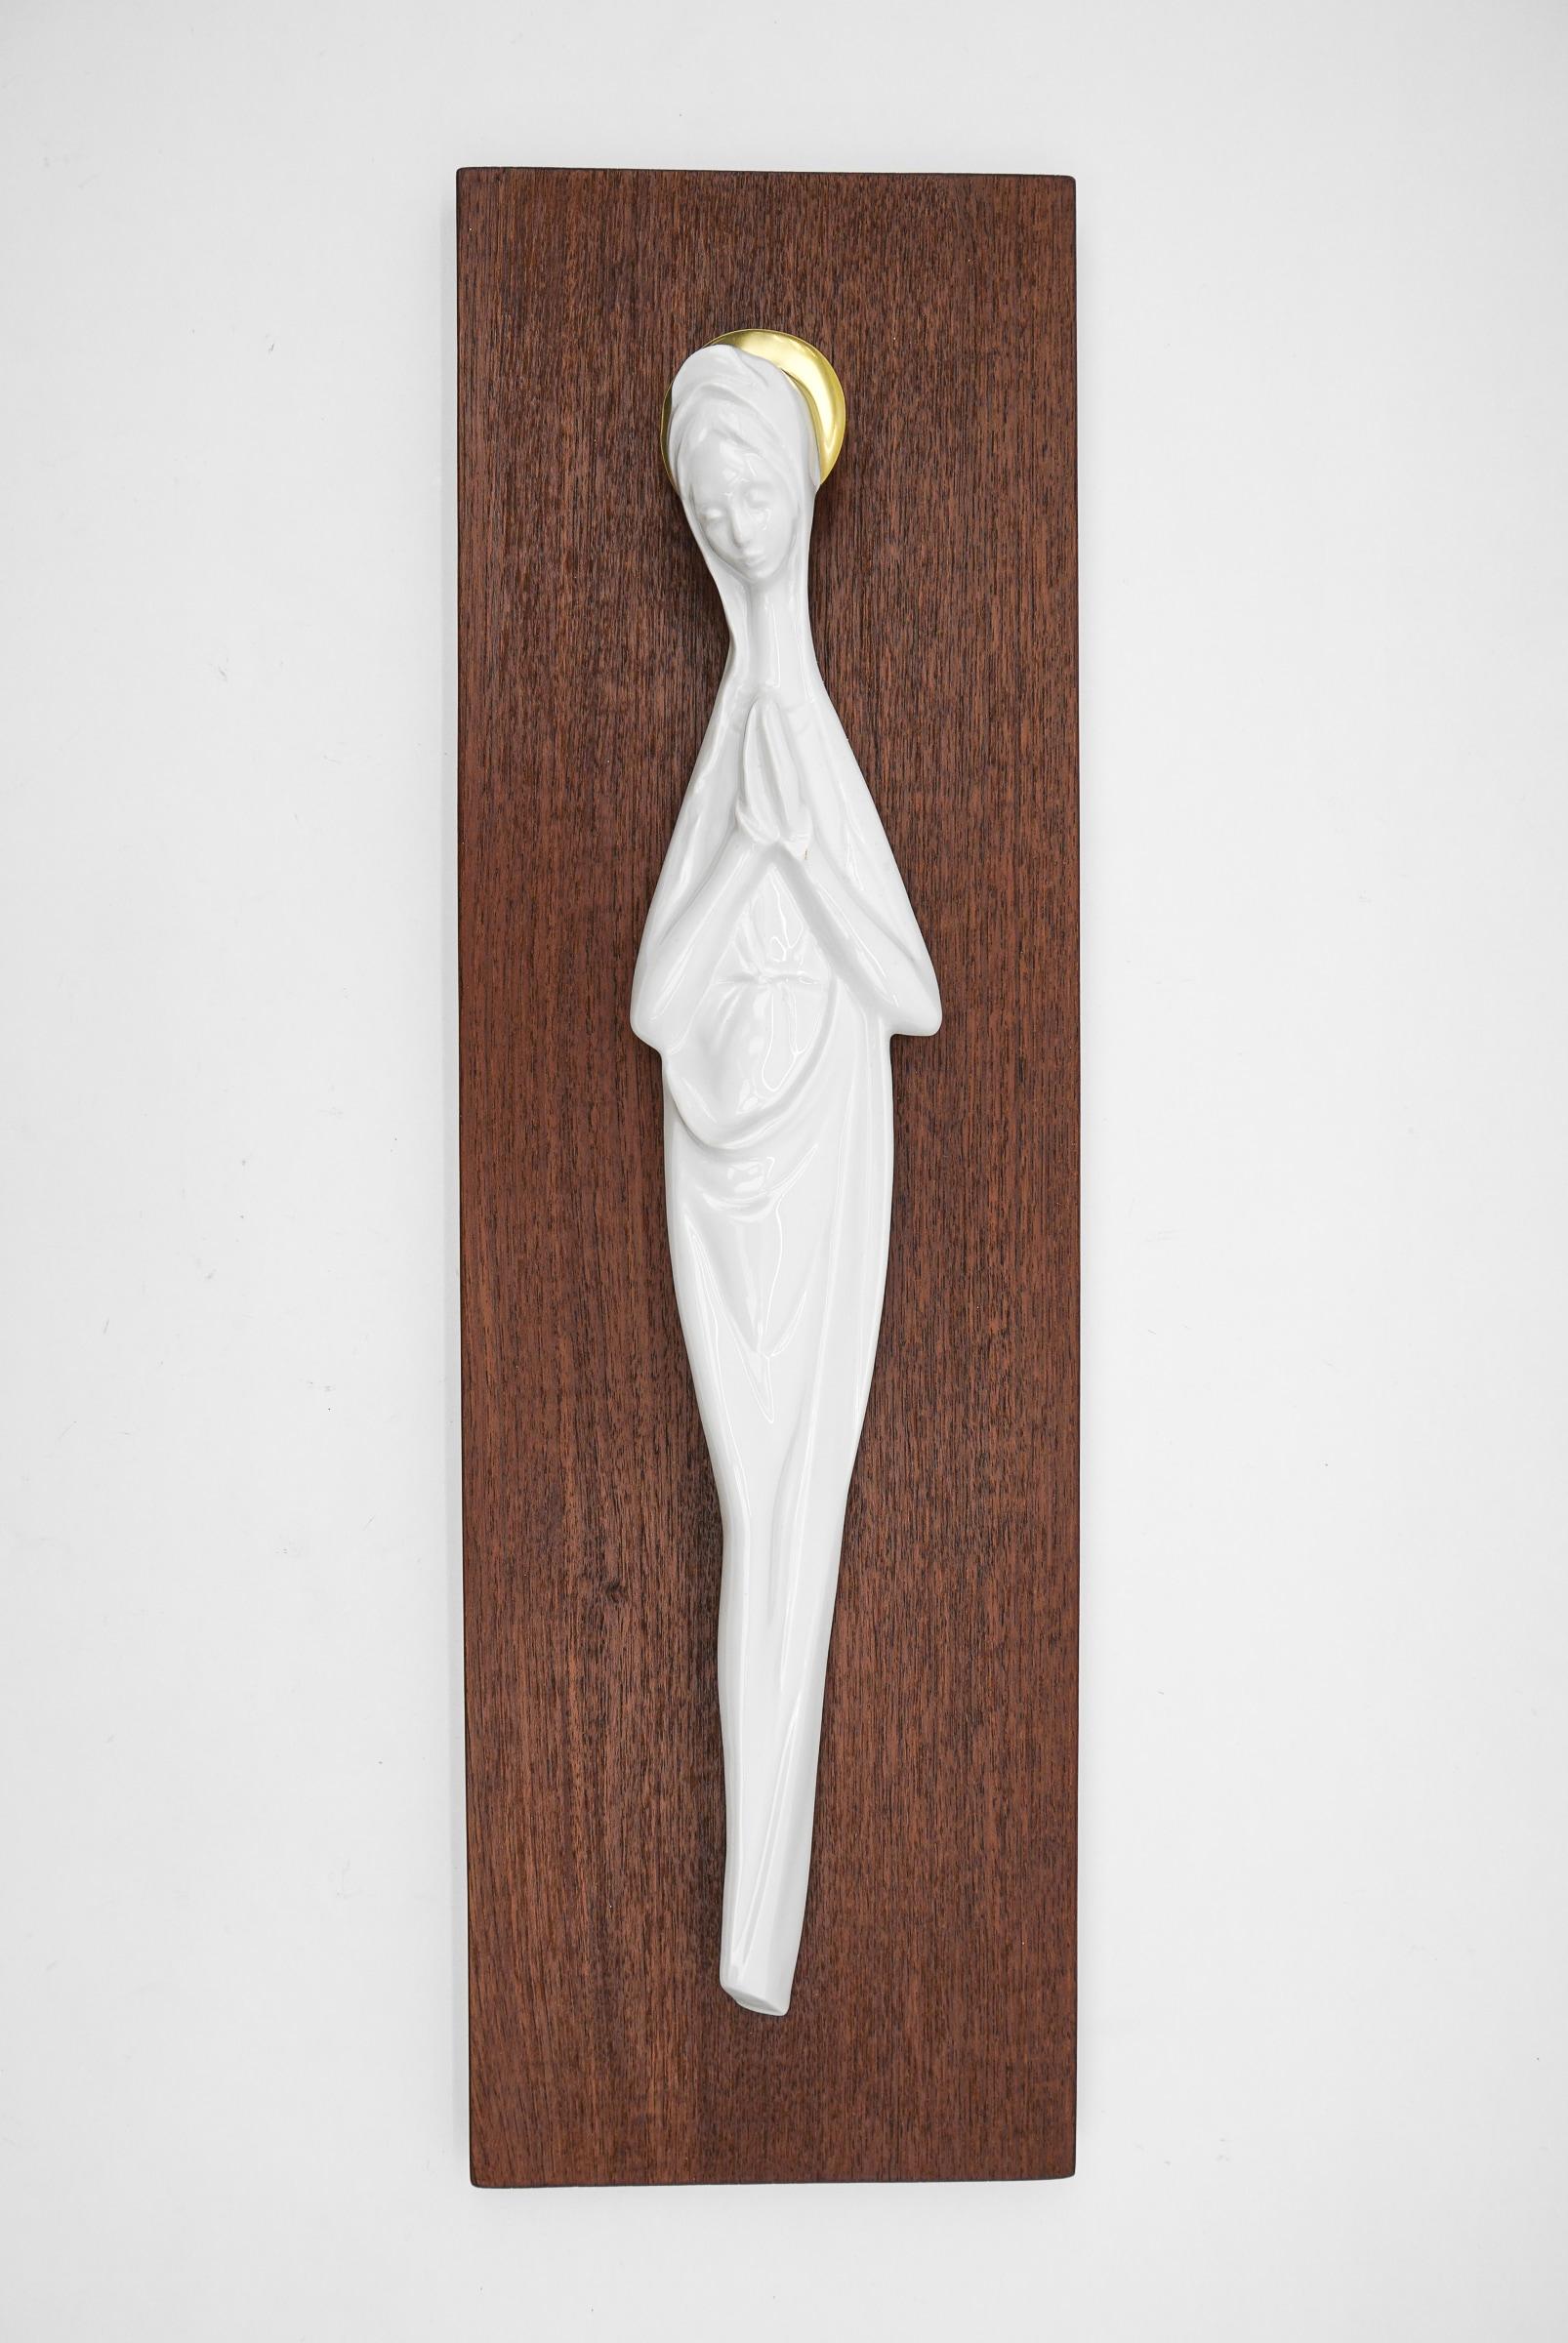 Vierge scandinave en porcelaine blanche moulée à la main sur panneau en teck, années 1960.

La porcelaine blanche contraste merveilleusement avec le teck. Parfaitement formées, très délicates et expressives. 

La tablette en teck a les dimensions